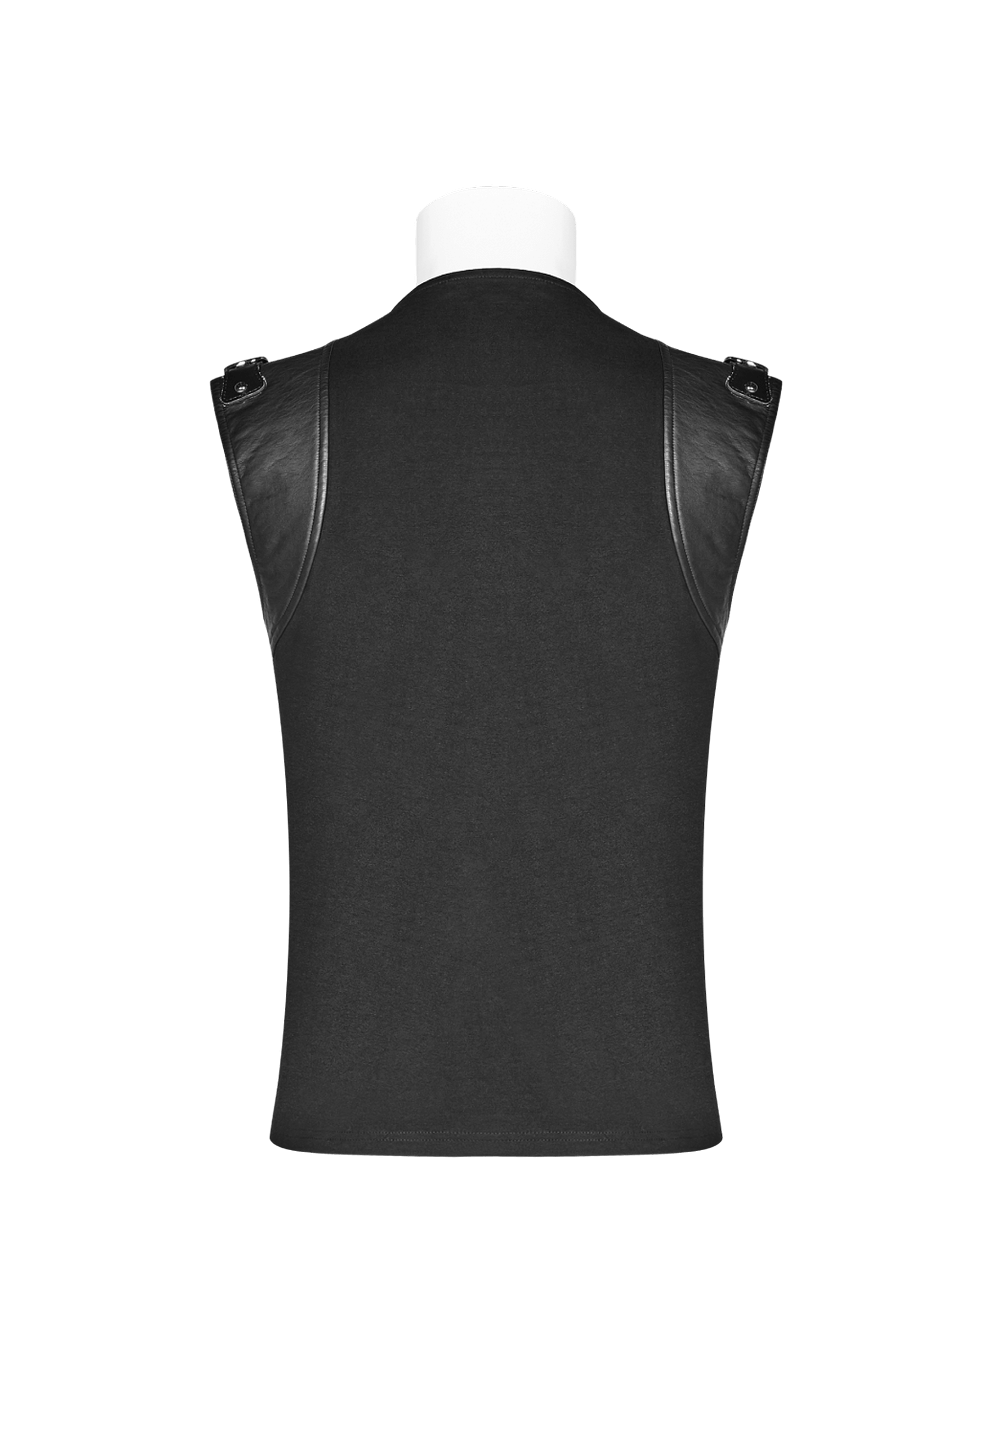 Stylish Punk Style Black Lace-Up Skeleton Vest